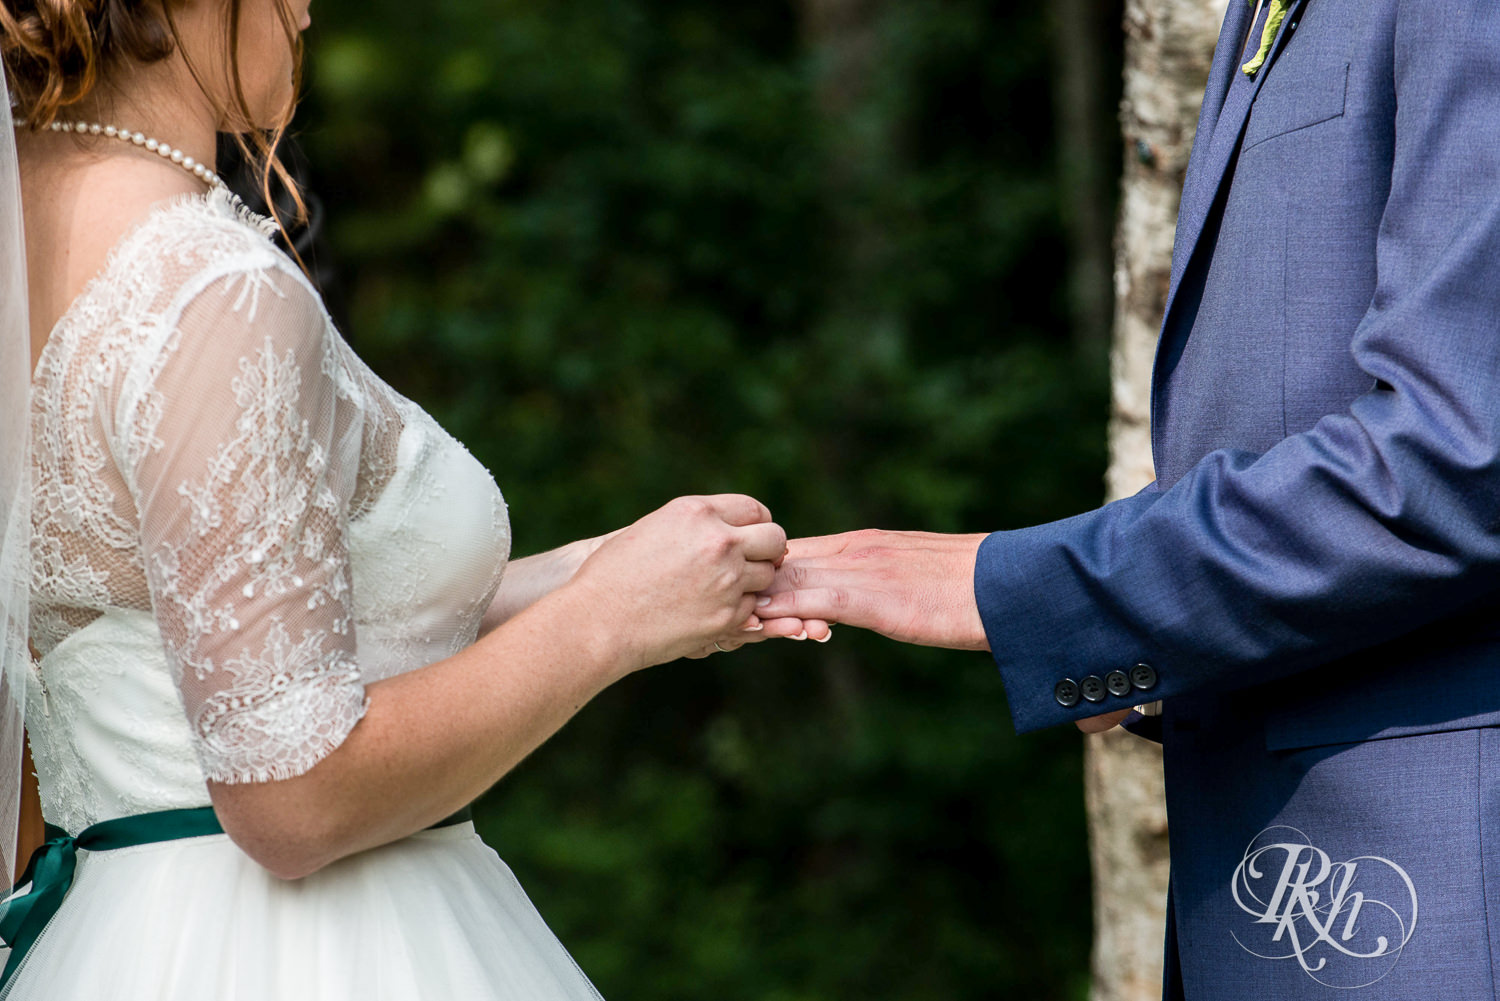 Bride and groom exchange rings during outdoor wedding ceremony in Elk Mound, Wisconsin.